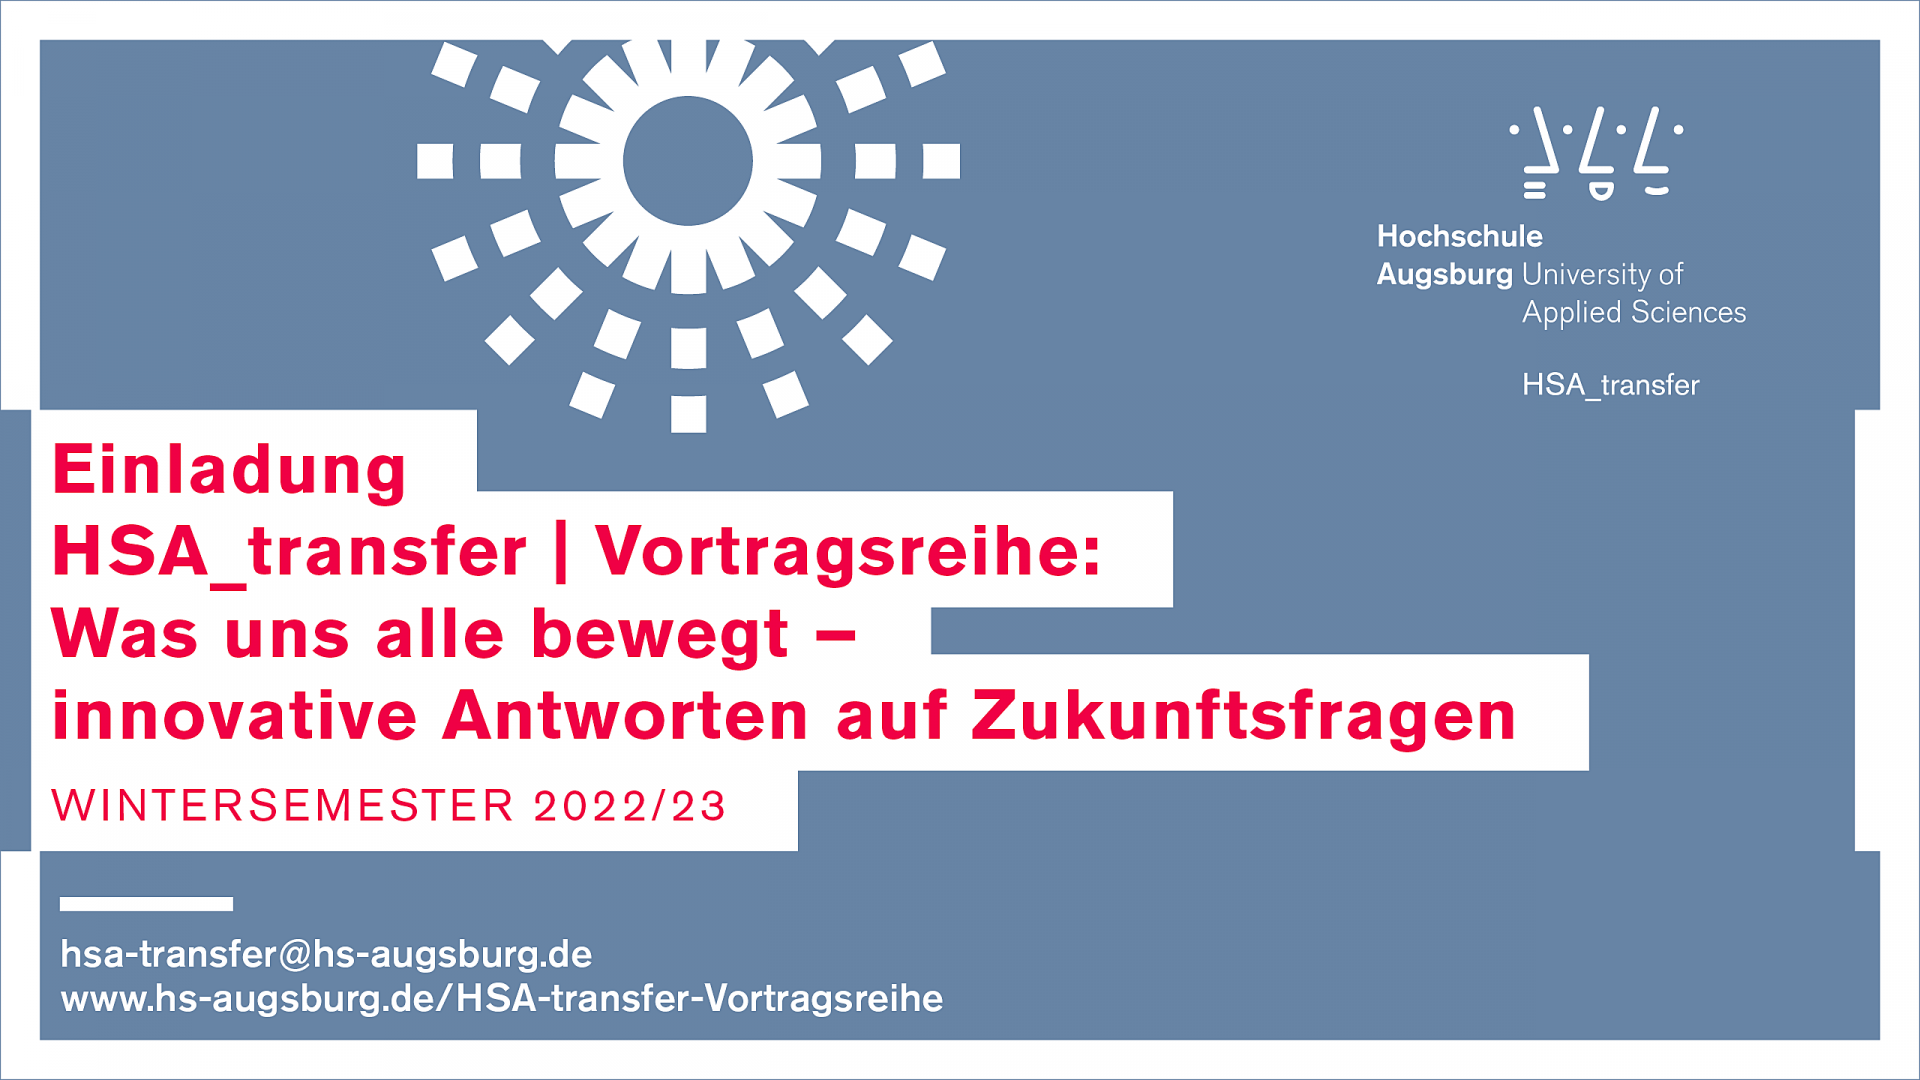 Banner: Einladung HSA_transfer | Vortragsreihe WS 22/23